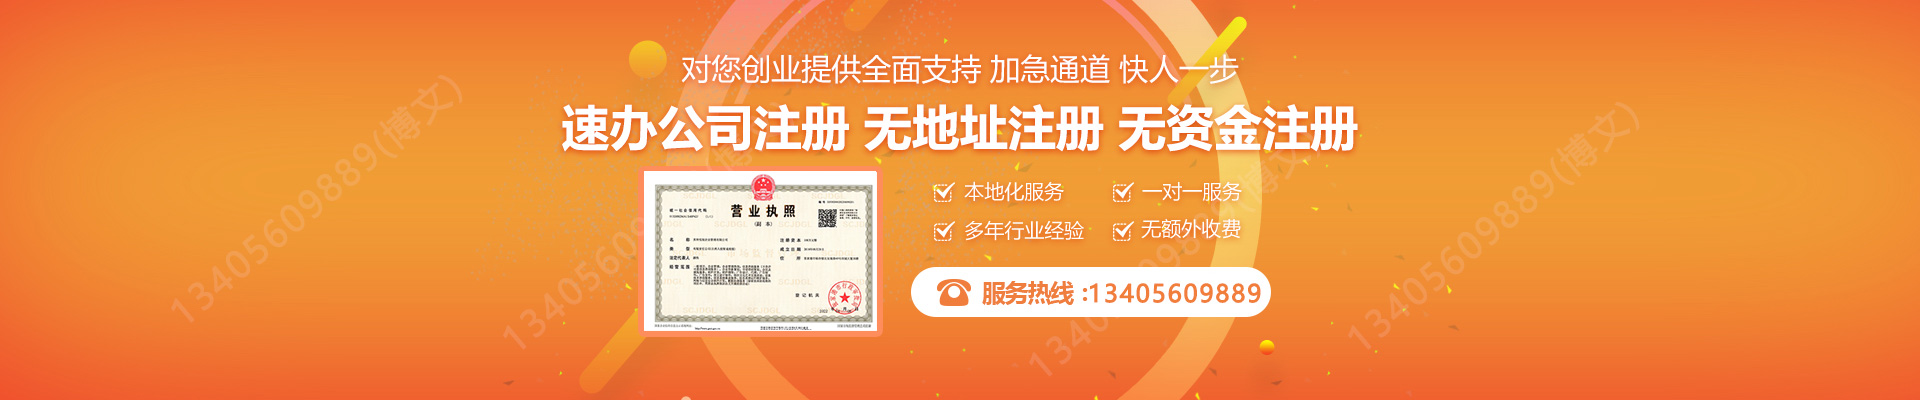 南京注册公司网